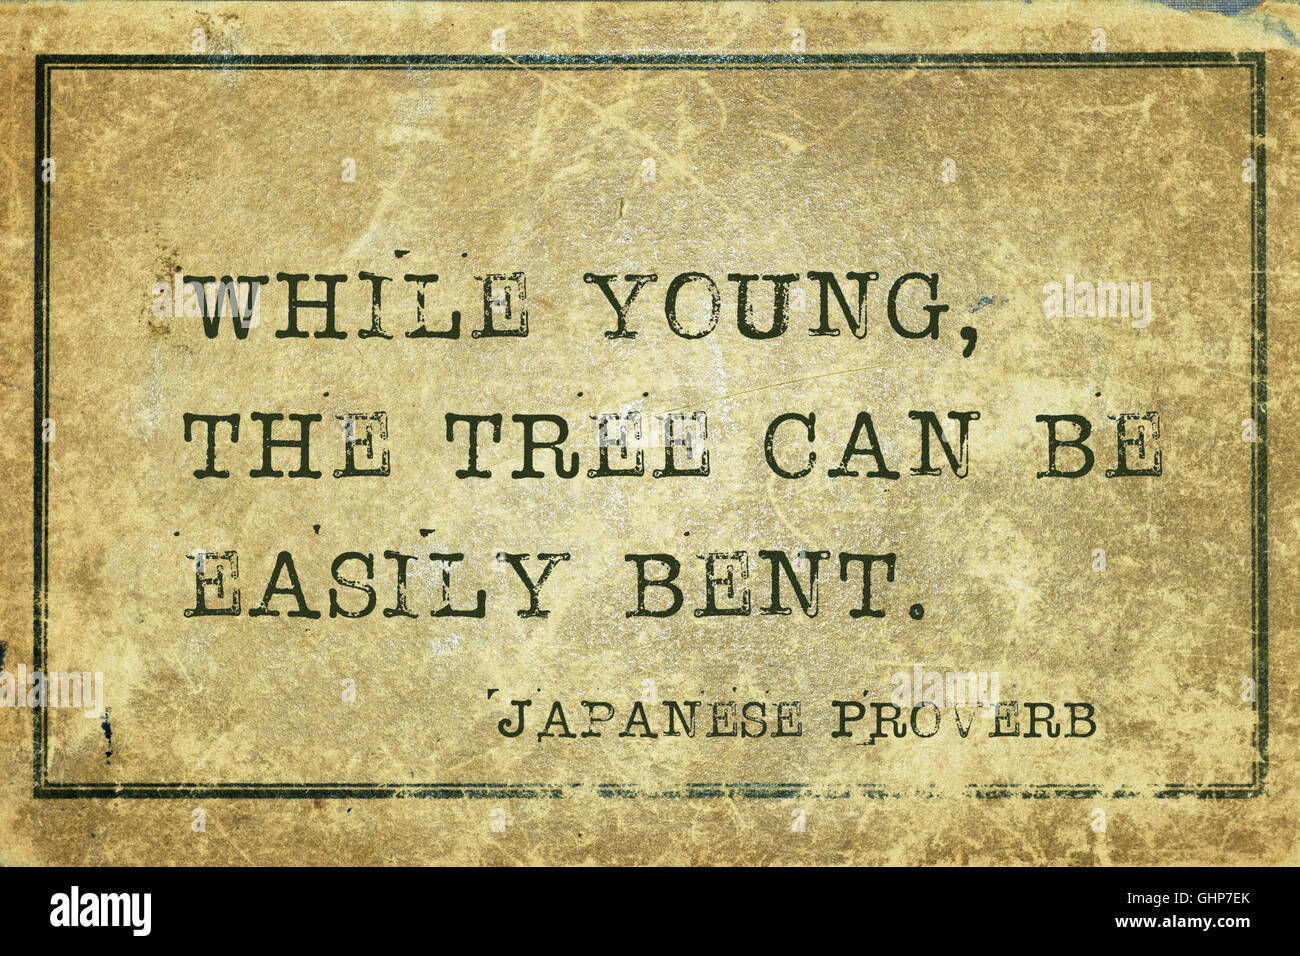 Alors que les jeunes, l'arbre peut être facilement plié - ancien proverbe japonais imprimé sur carton vintage grunge Banque D'Images